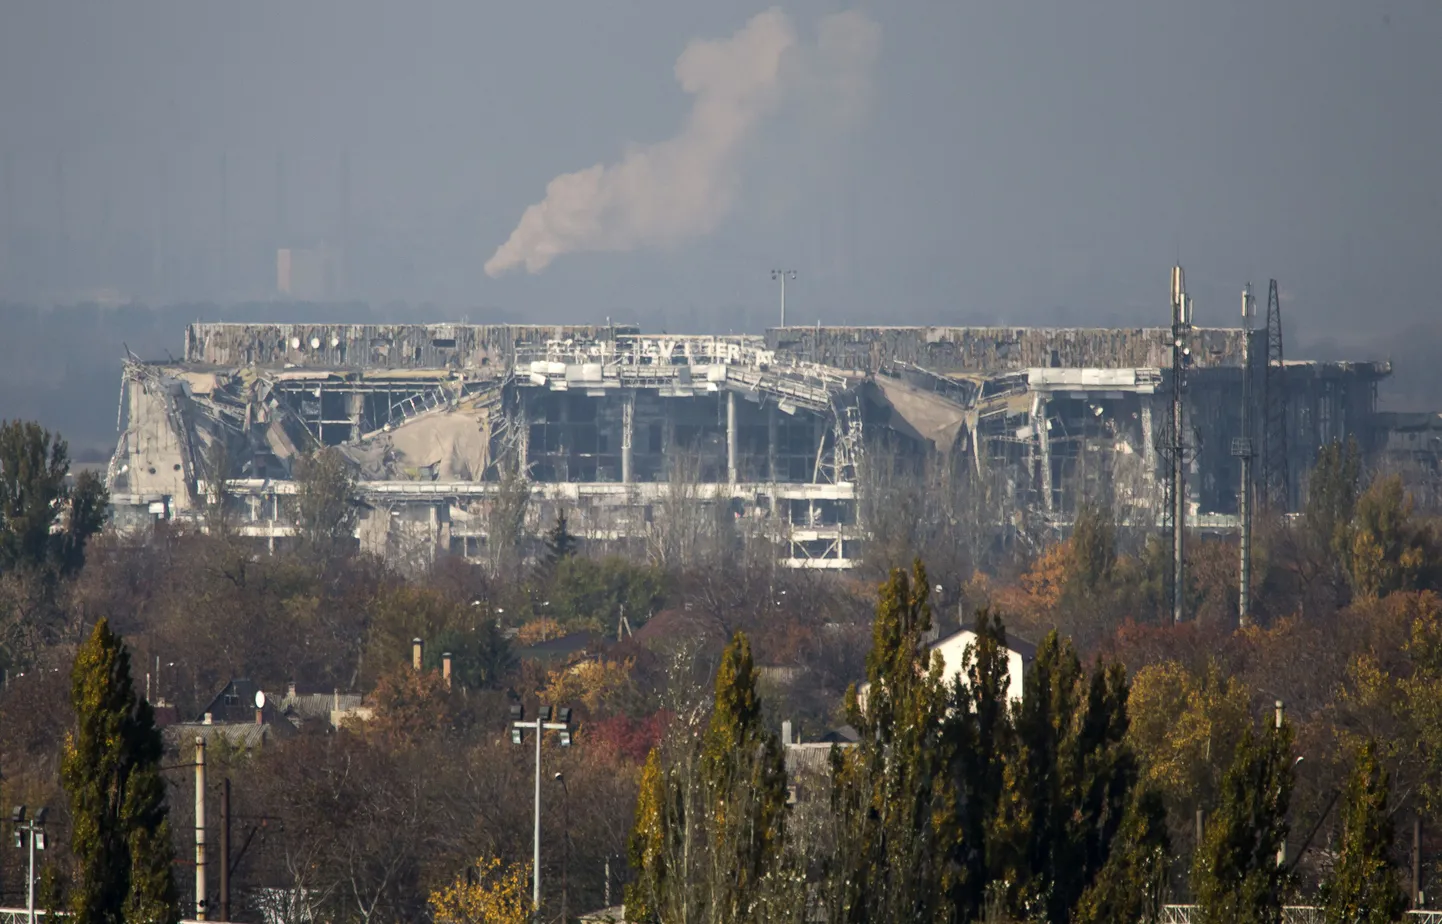 Donetskis asuva Sergei Prokofjevi nimelise rahvusvahelise lennuvälja peaterminali varemed.